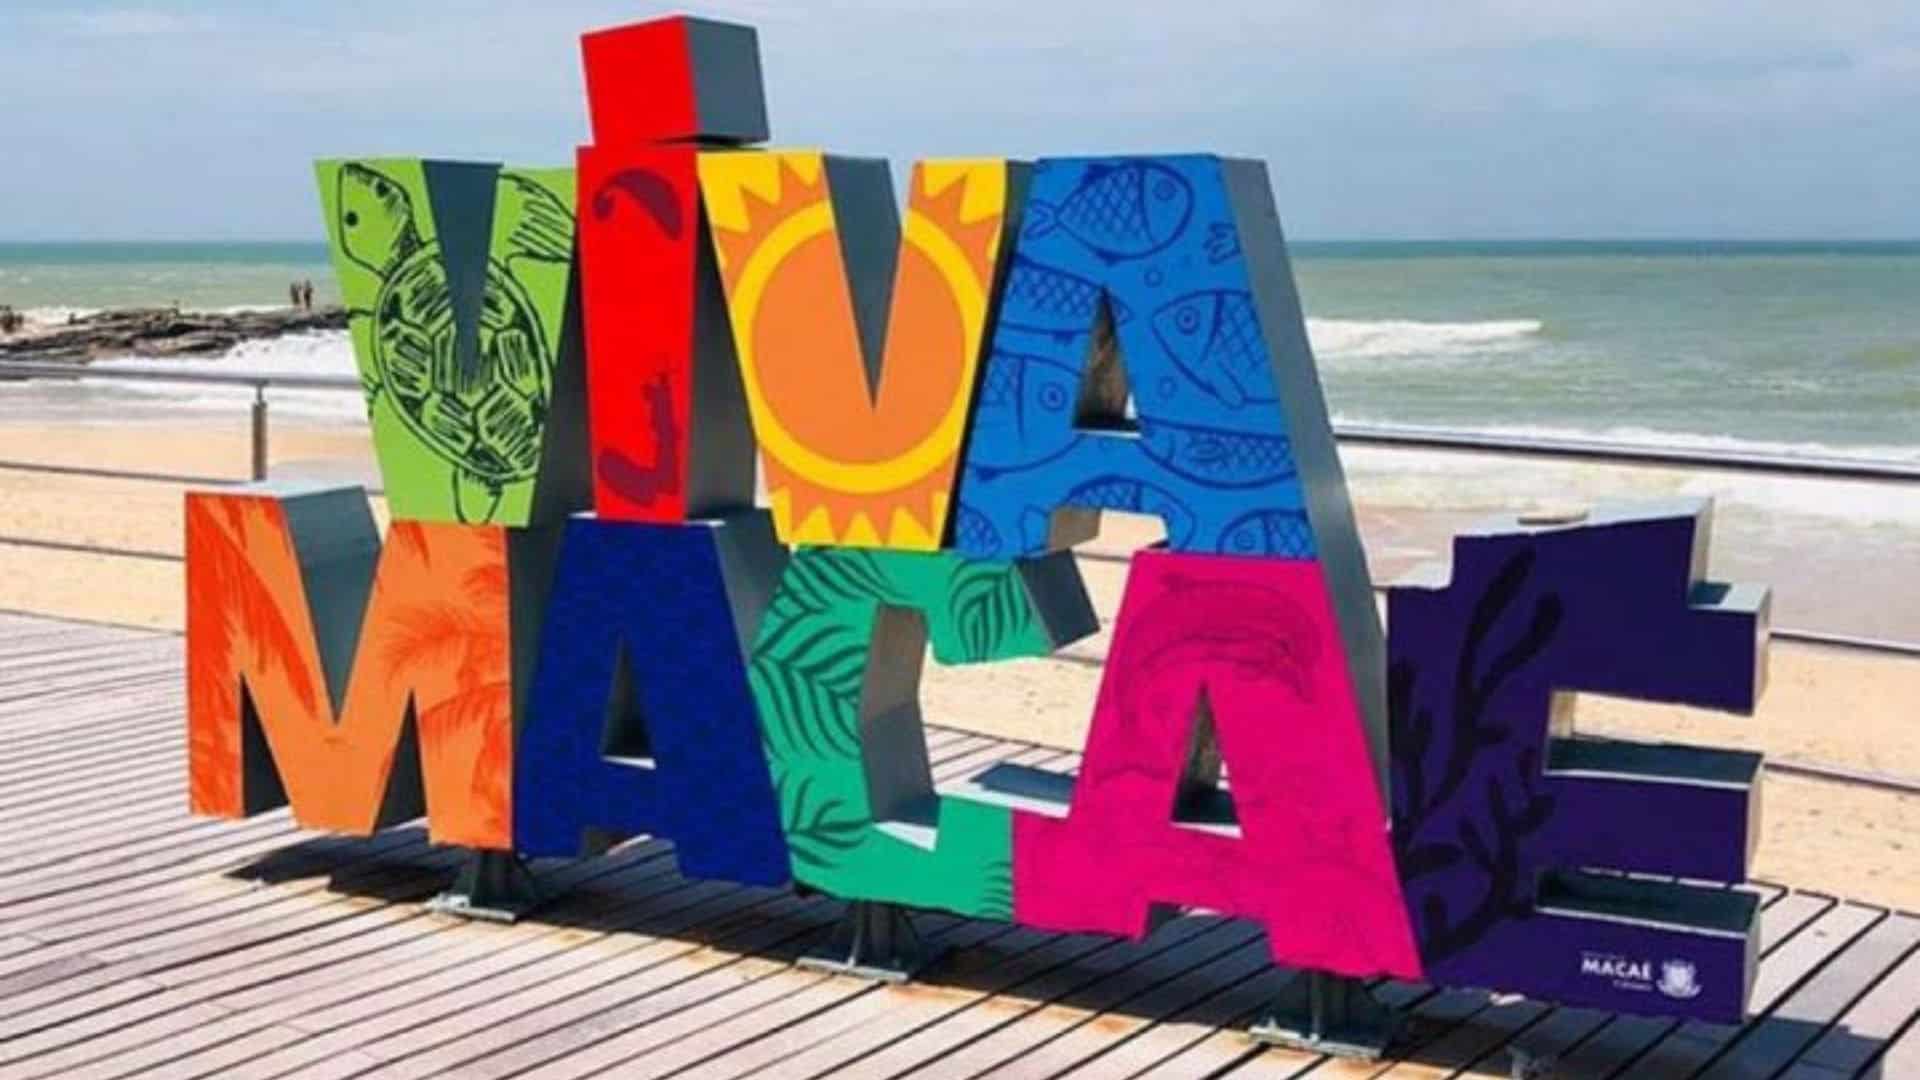 imagem de letras grandes na praia formando a palavra Viva Macaé